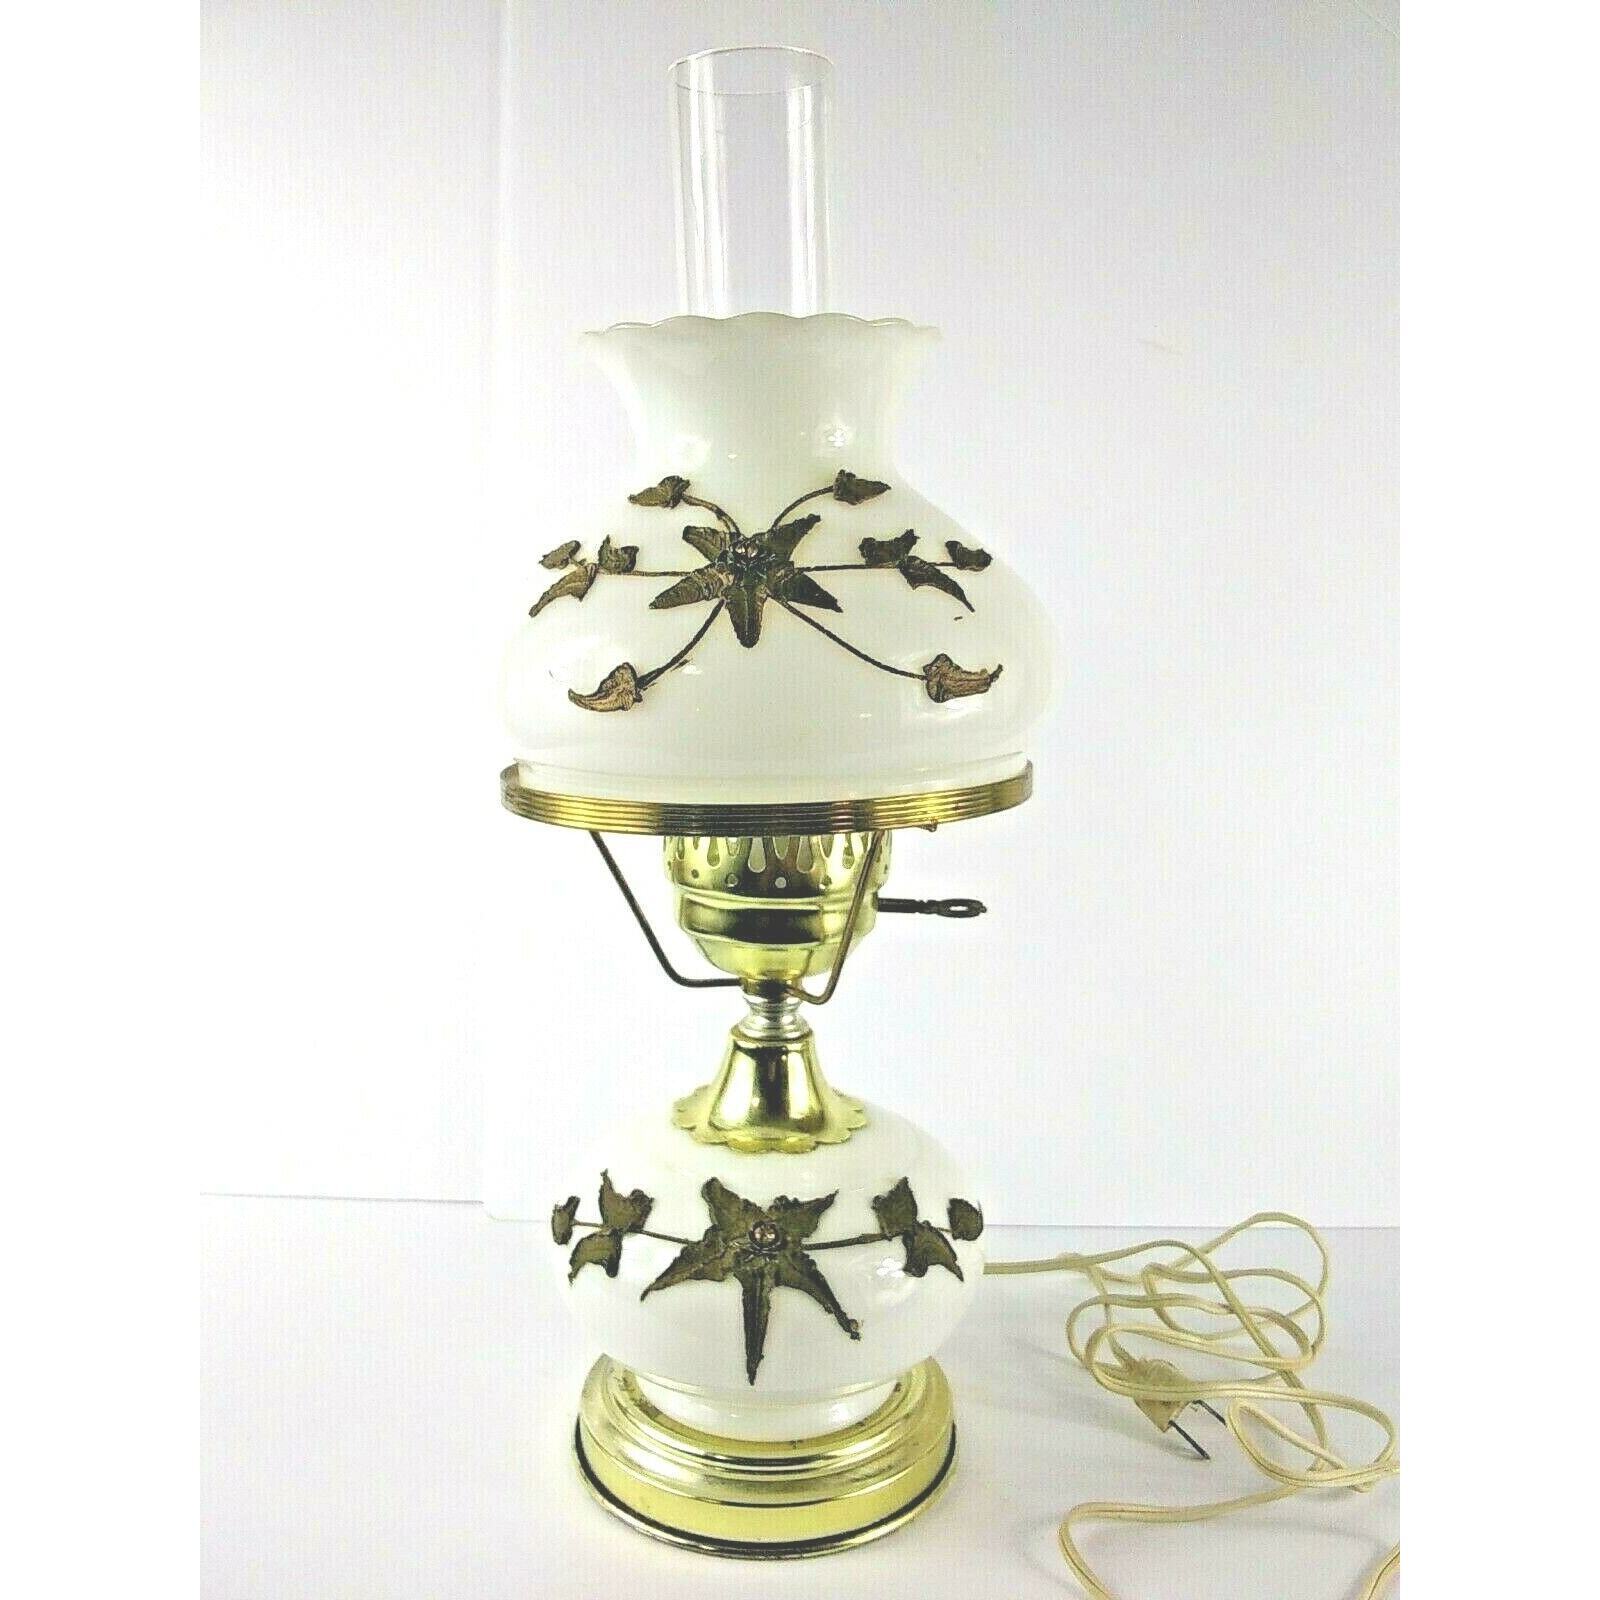 Vtg Hurricane Electric Lamp White Glass Gold Tone Flower Design Plymouth Harper